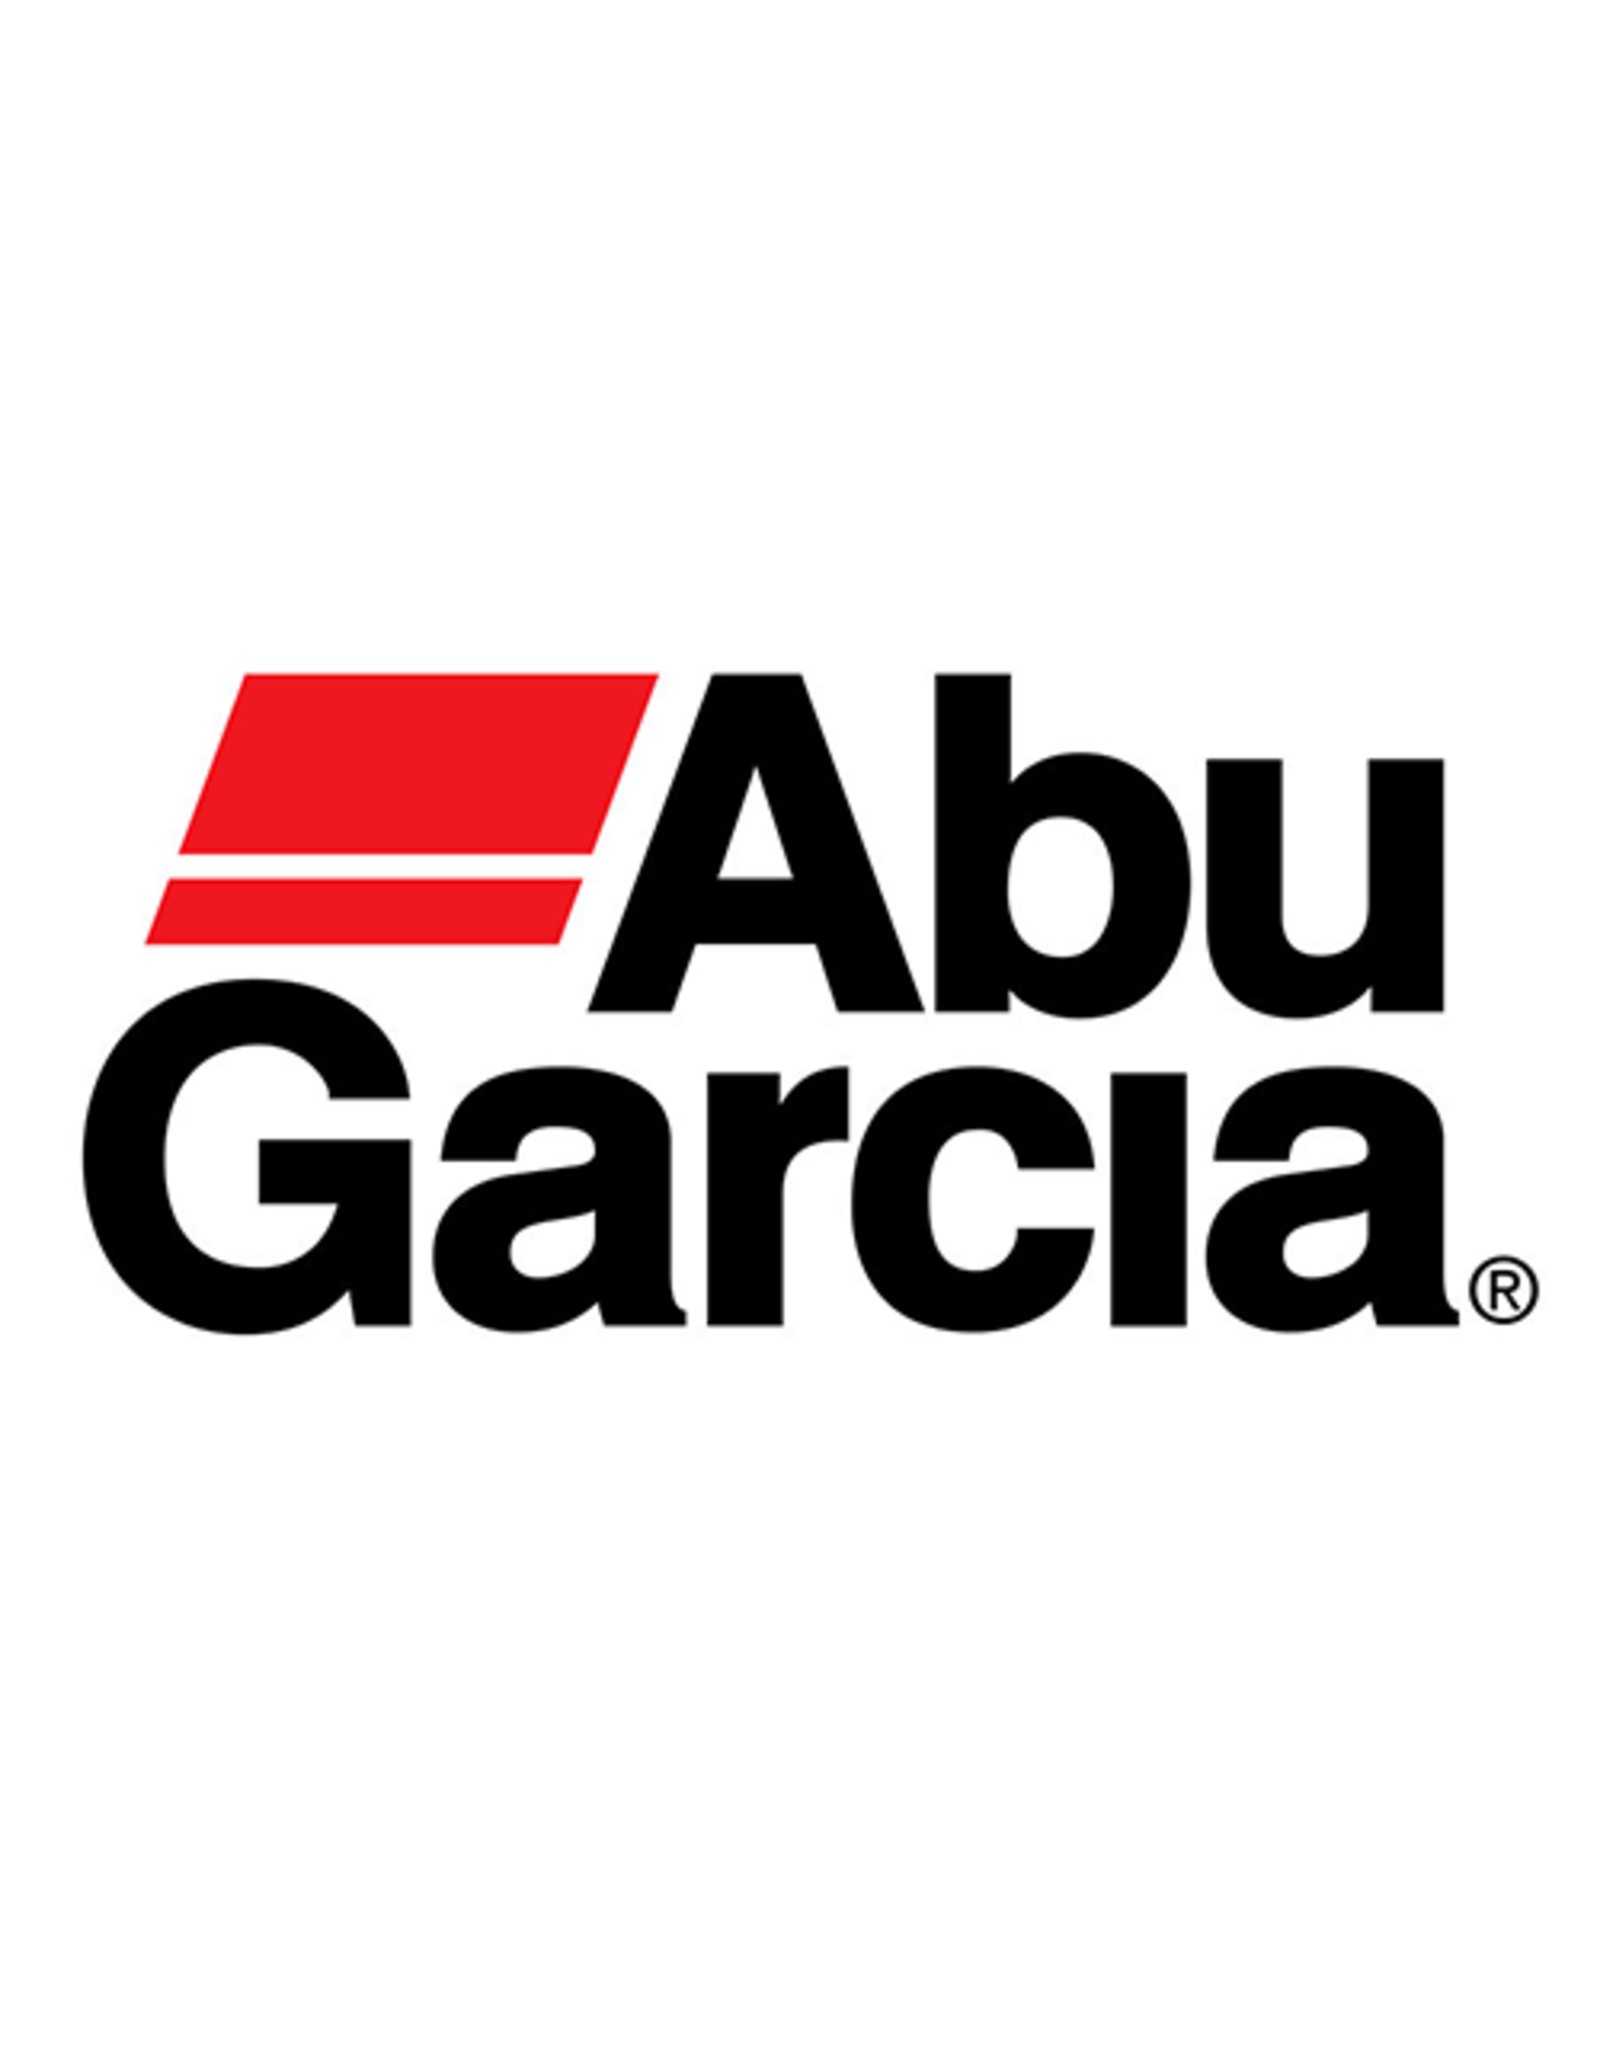 Abu Garcia 1125792  BEARING HOUSING